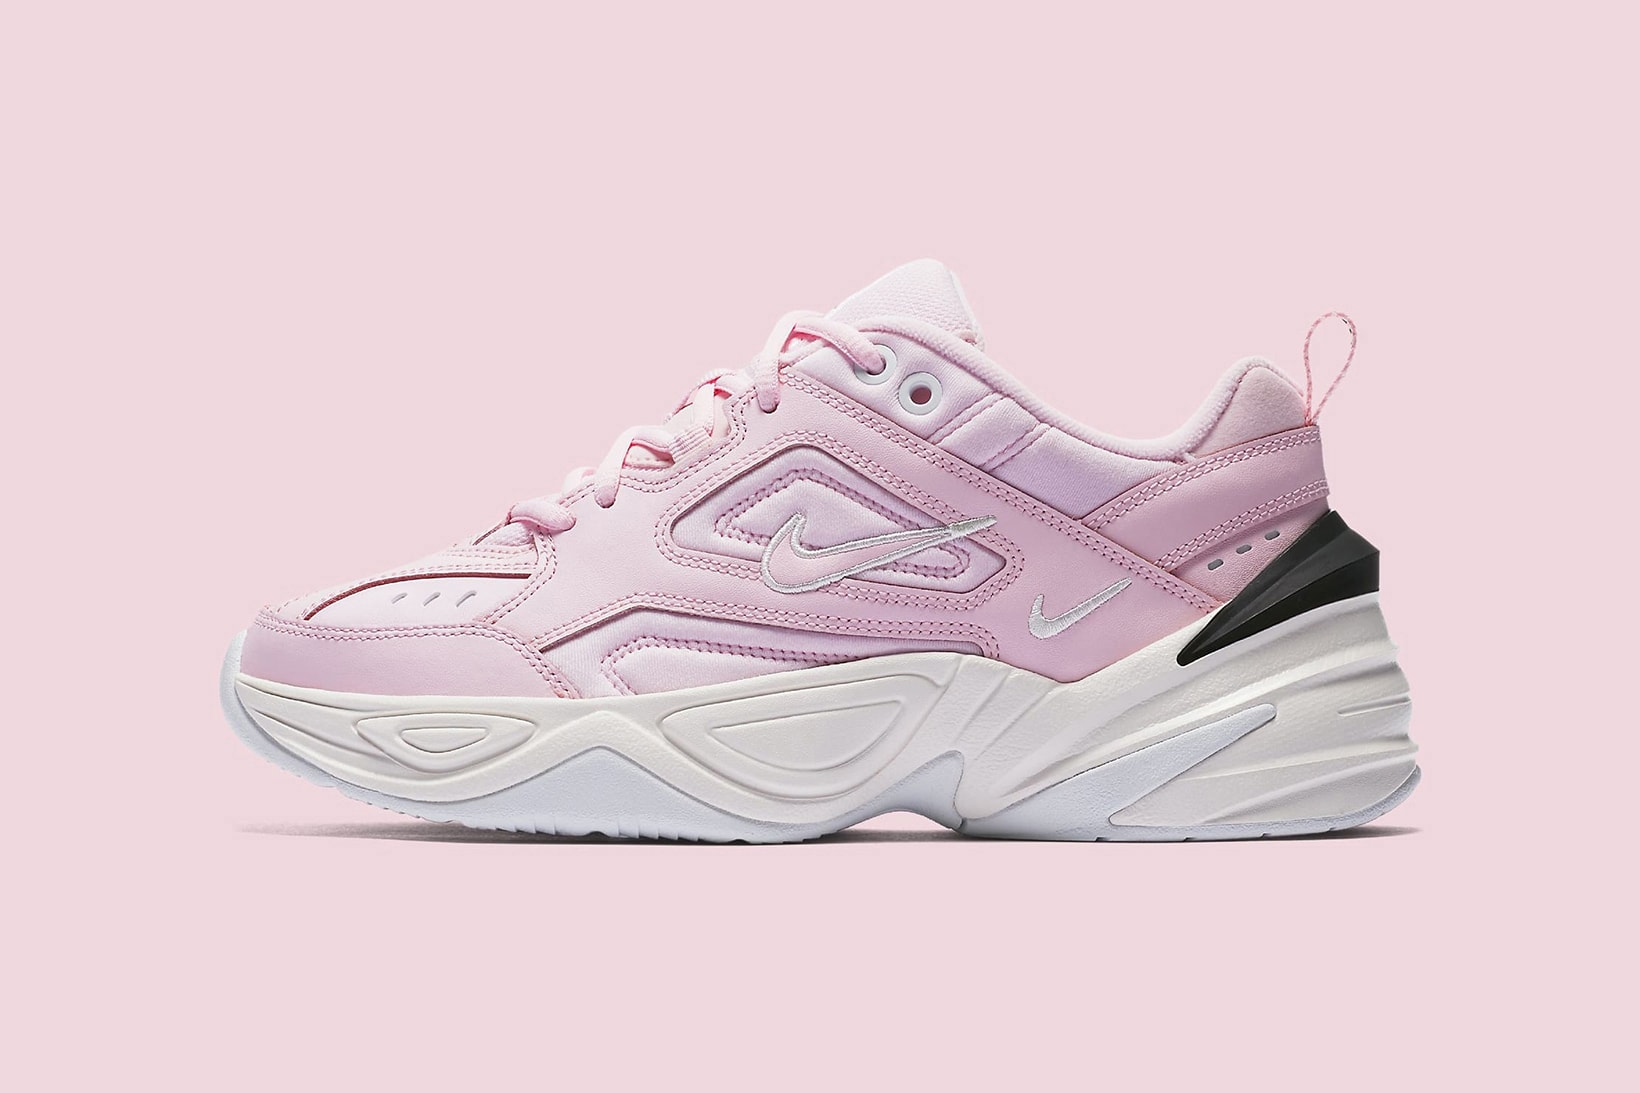 Nike M2K Tekno Pink Foam black phantom white 2018 may 5 release date info drop sneakers shoes footwear monarch